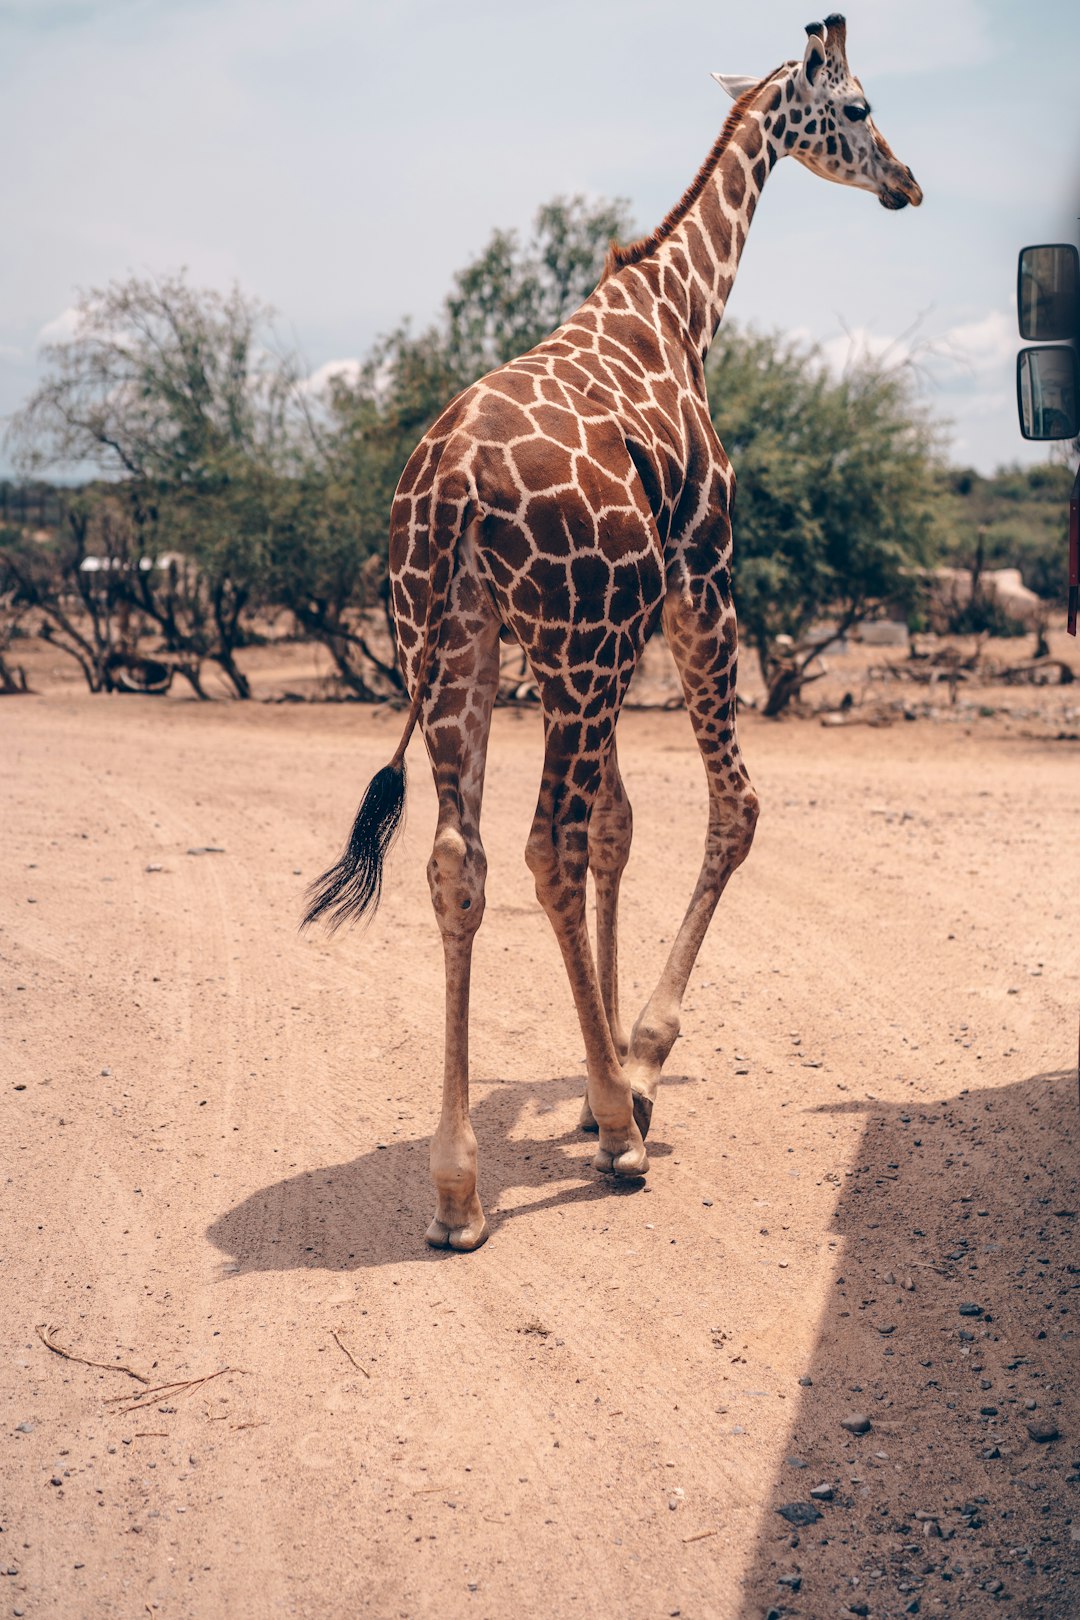 giraffe walking on brown dirt during daytime